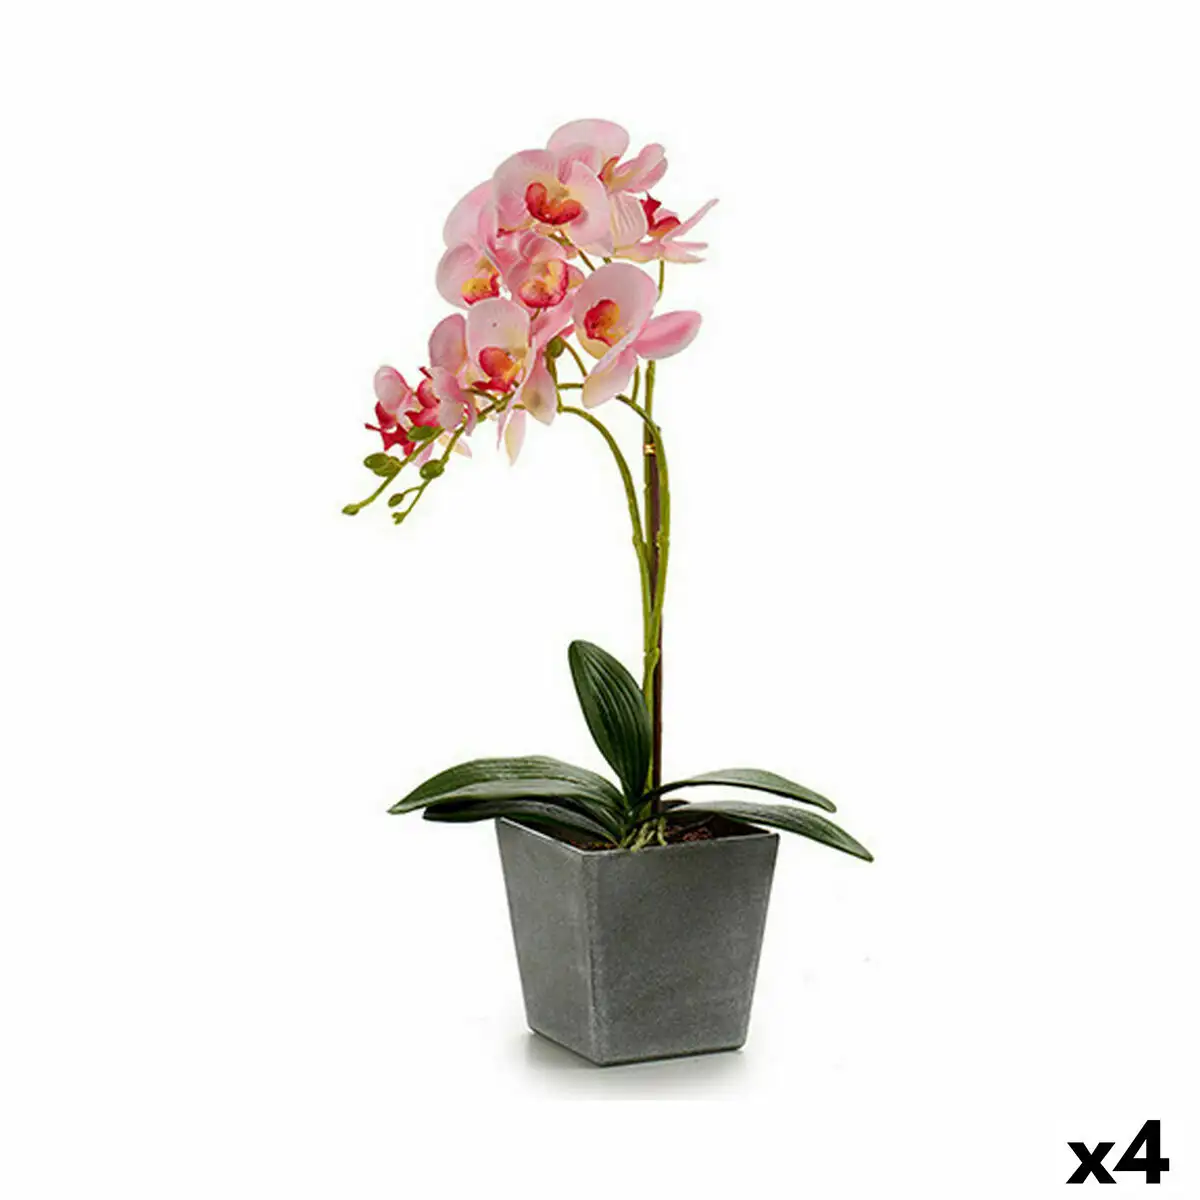 Plante decorative orchidee plastique 20 x 47 x 33 cm 4 unites _2101. DIAYTAR SENEGAL - Où Chaque Produit est une Promesse de Qualité. Explorez notre boutique en ligne et choisissez des produits qui répondent à vos exigences élevées.